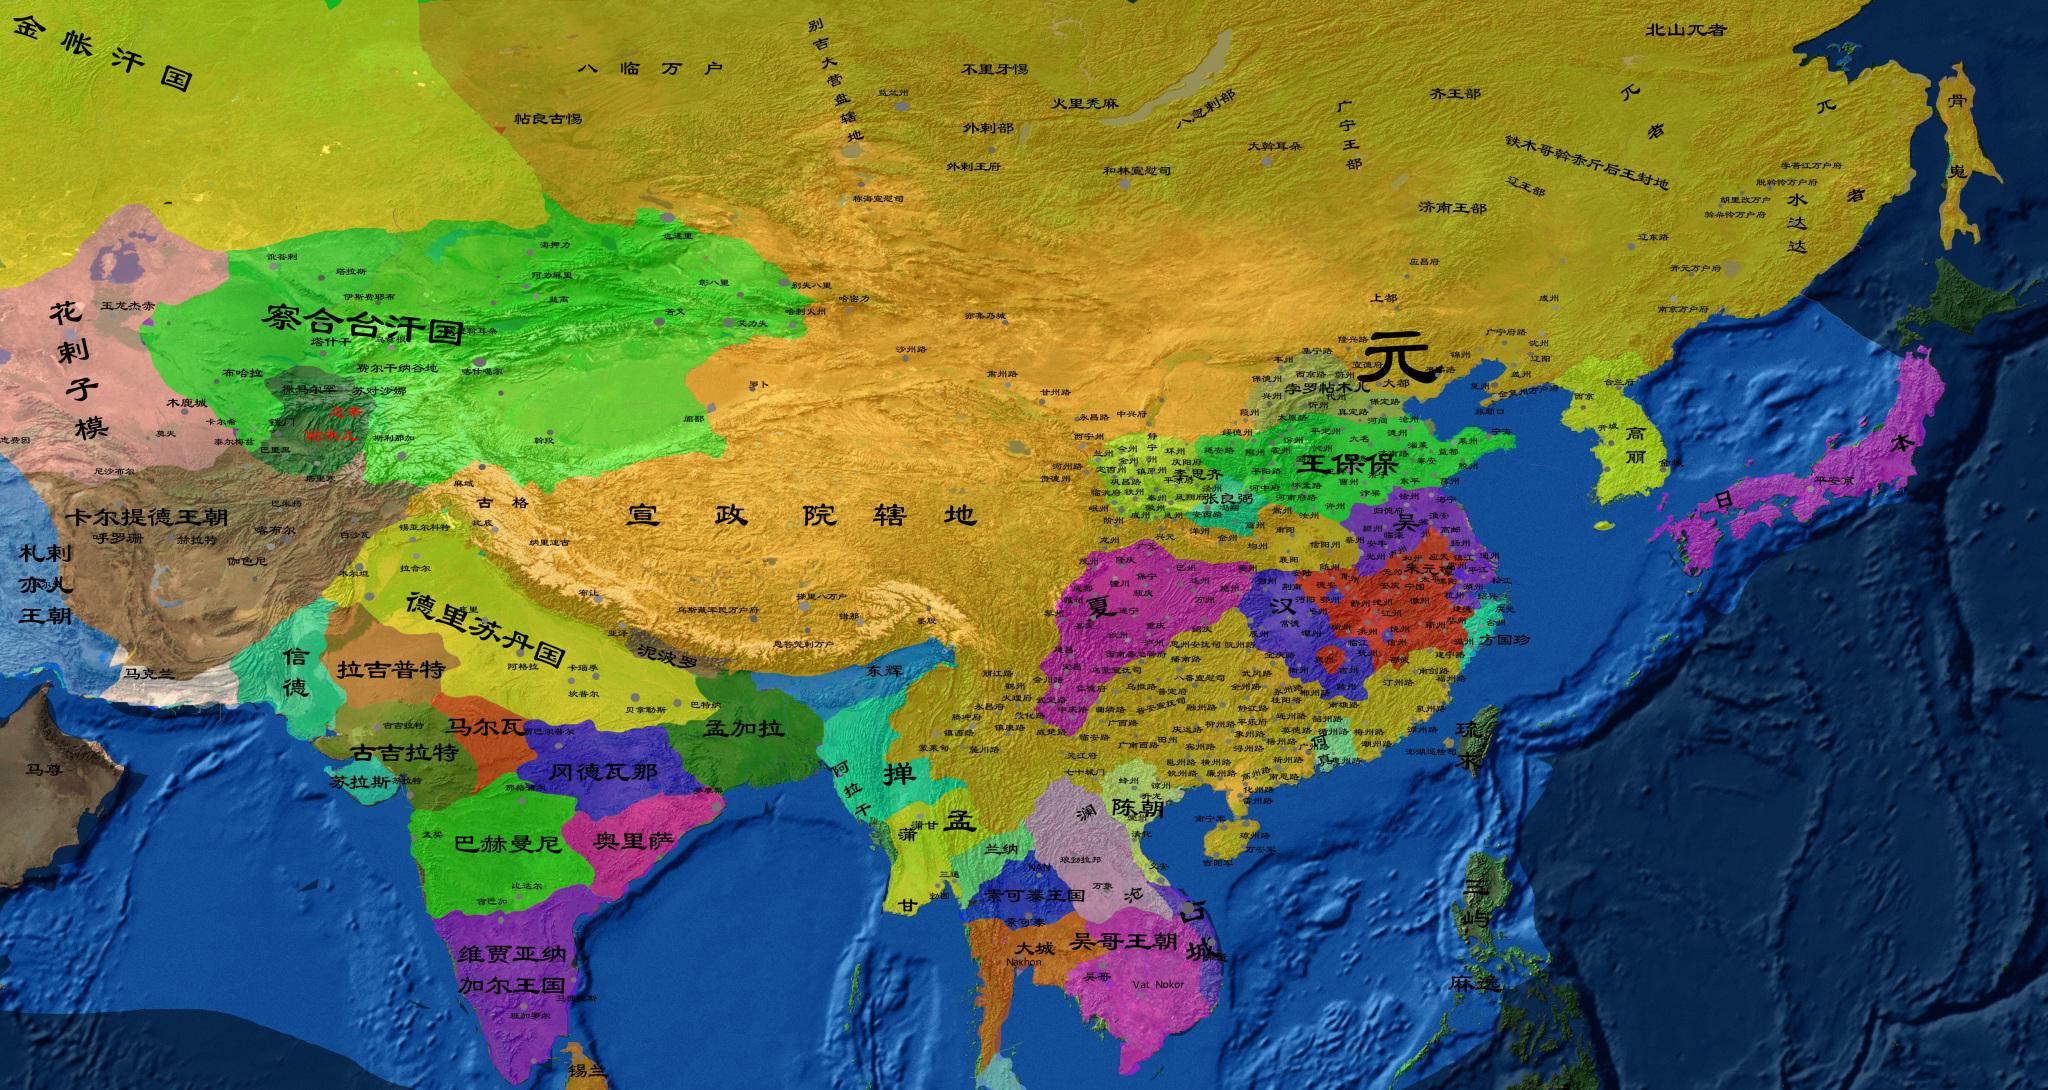 蒙古帝国和元朝的区别 请大家分清“蒙古帝国”和“元朝”的区别